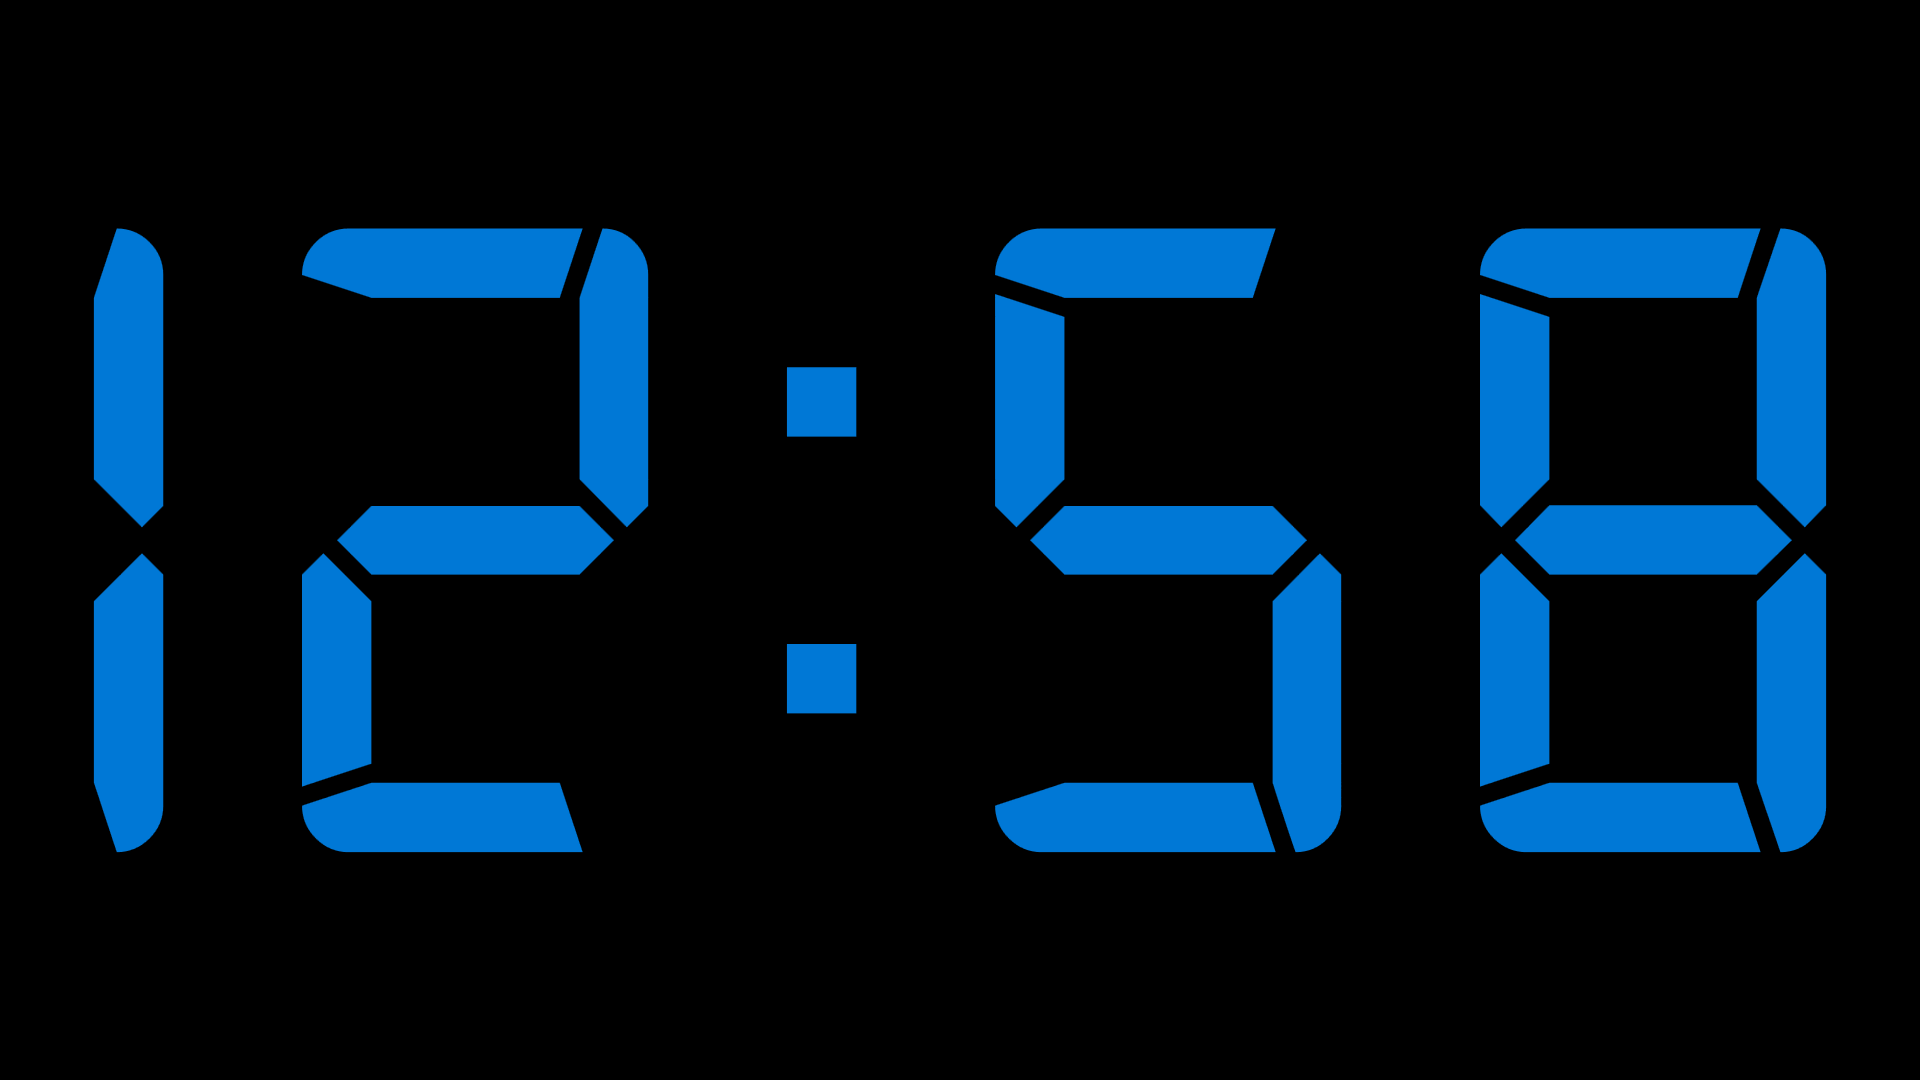 Оставшееся время 0 45. Часы Digital Clock 200730138828.4. Цифровые часы на экран. Скринсейвер электронные часы. Большие электронные часы.